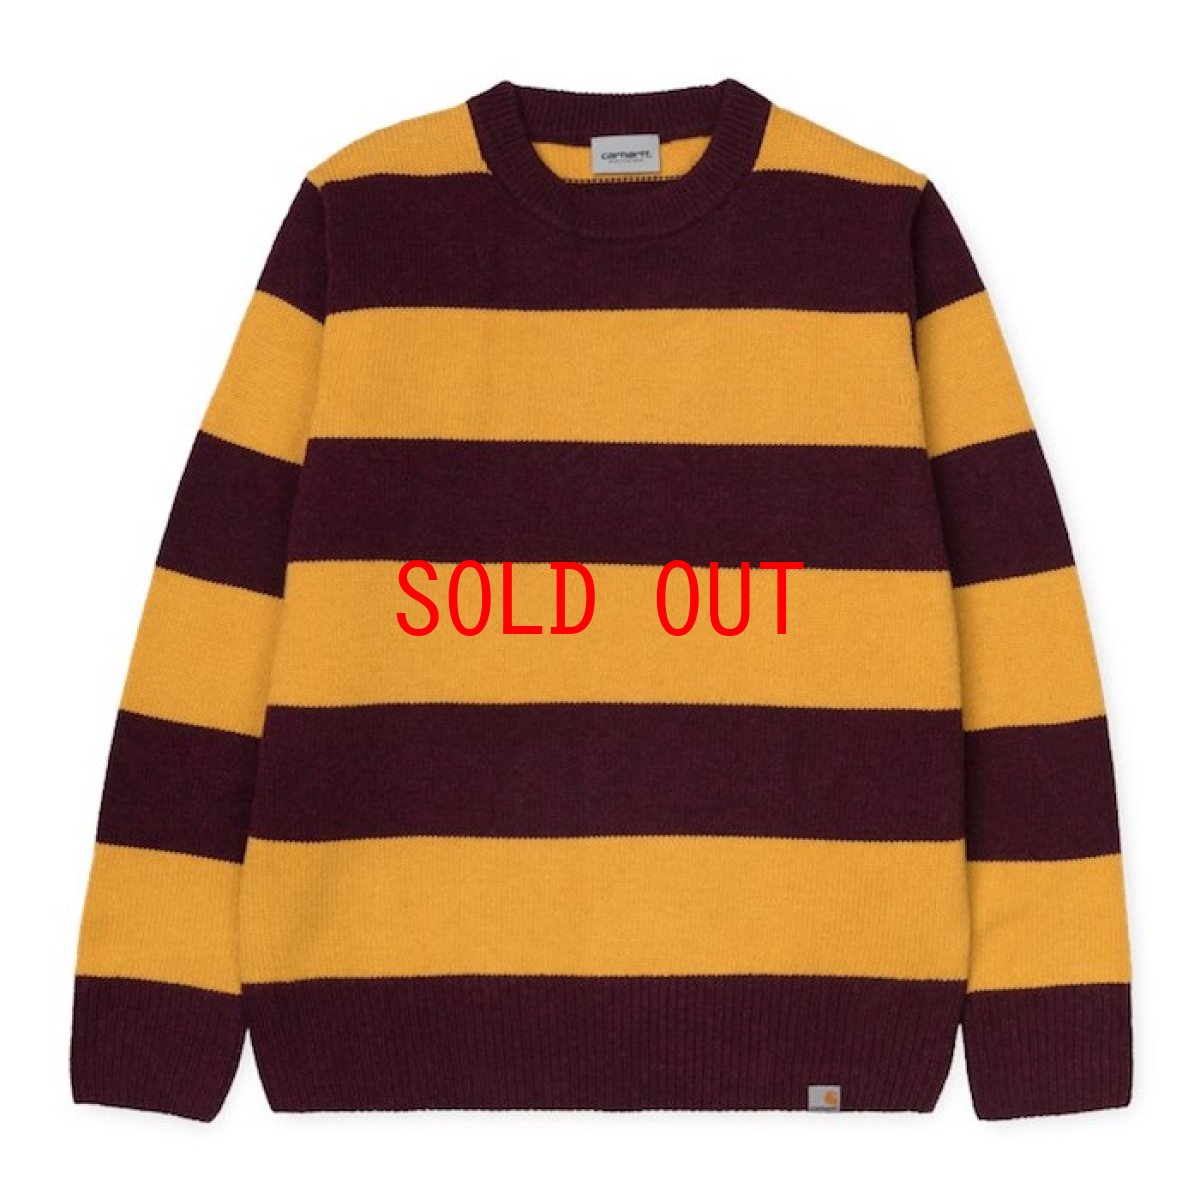 画像1: Alvin Sweater Stripe Knit Wear Border Maroon Wine Red Yellow ニット ボーダー セーター (1)